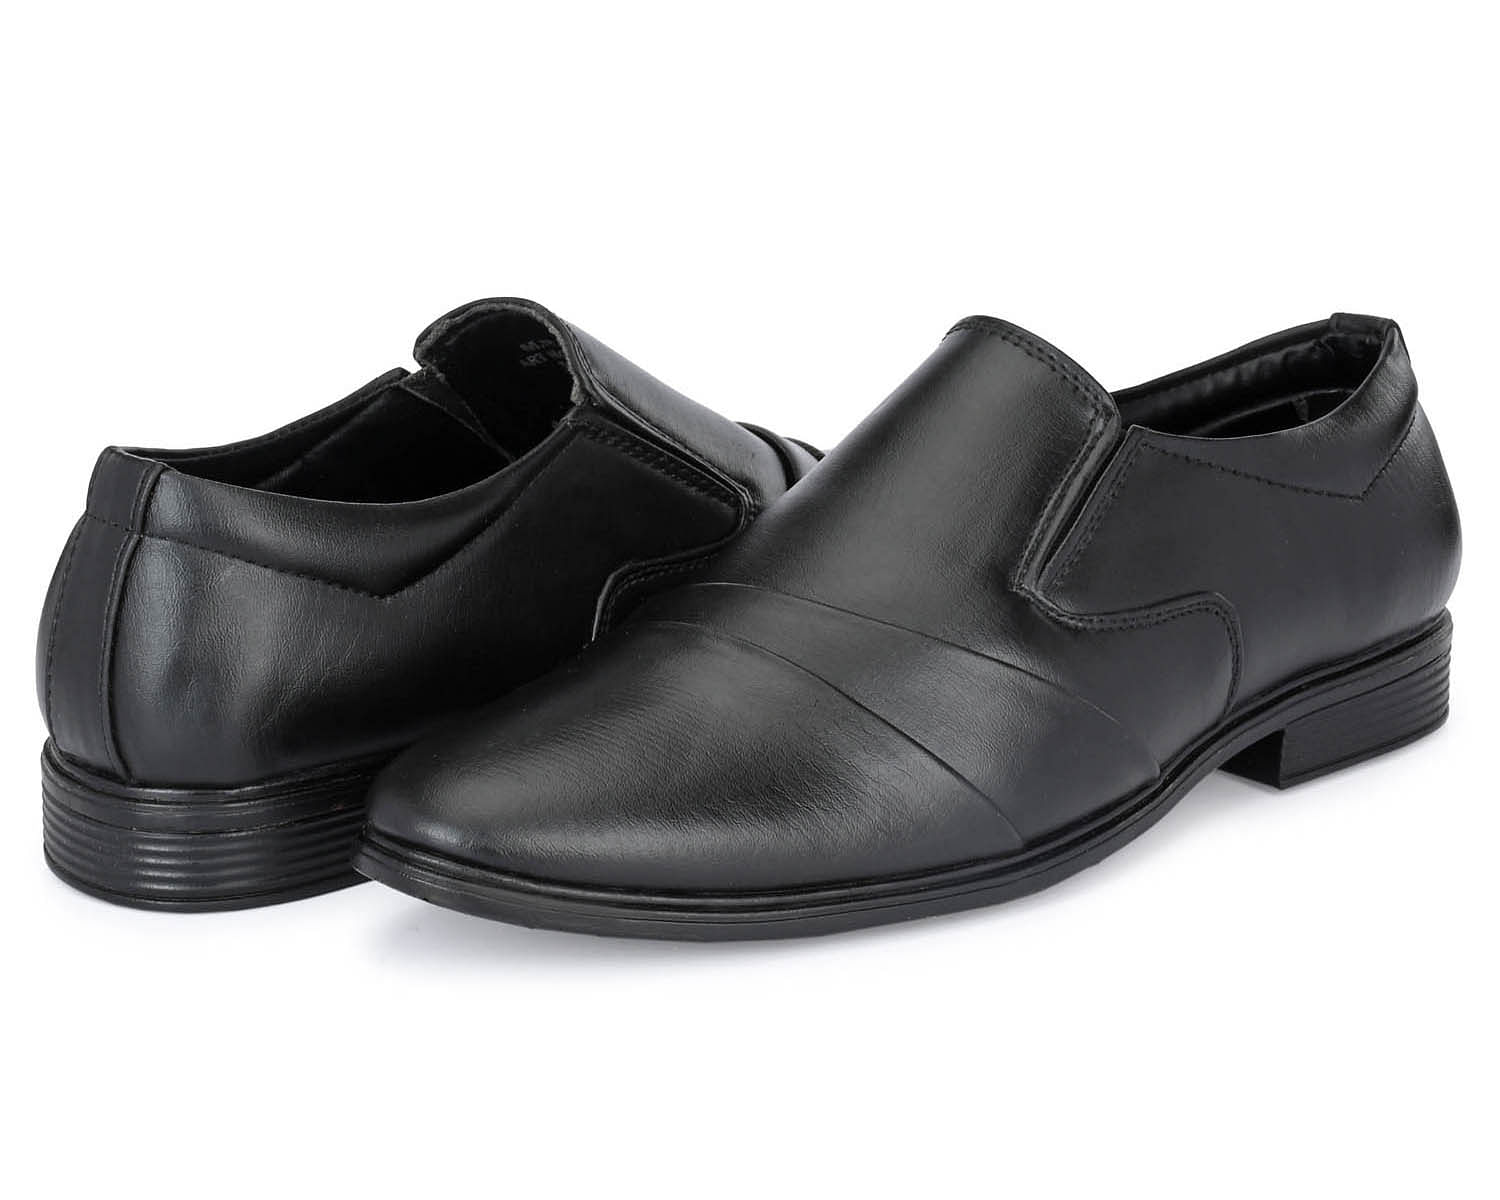 Pair-it Men moccasin Formal Shoes - MN-RYDER221 -Black